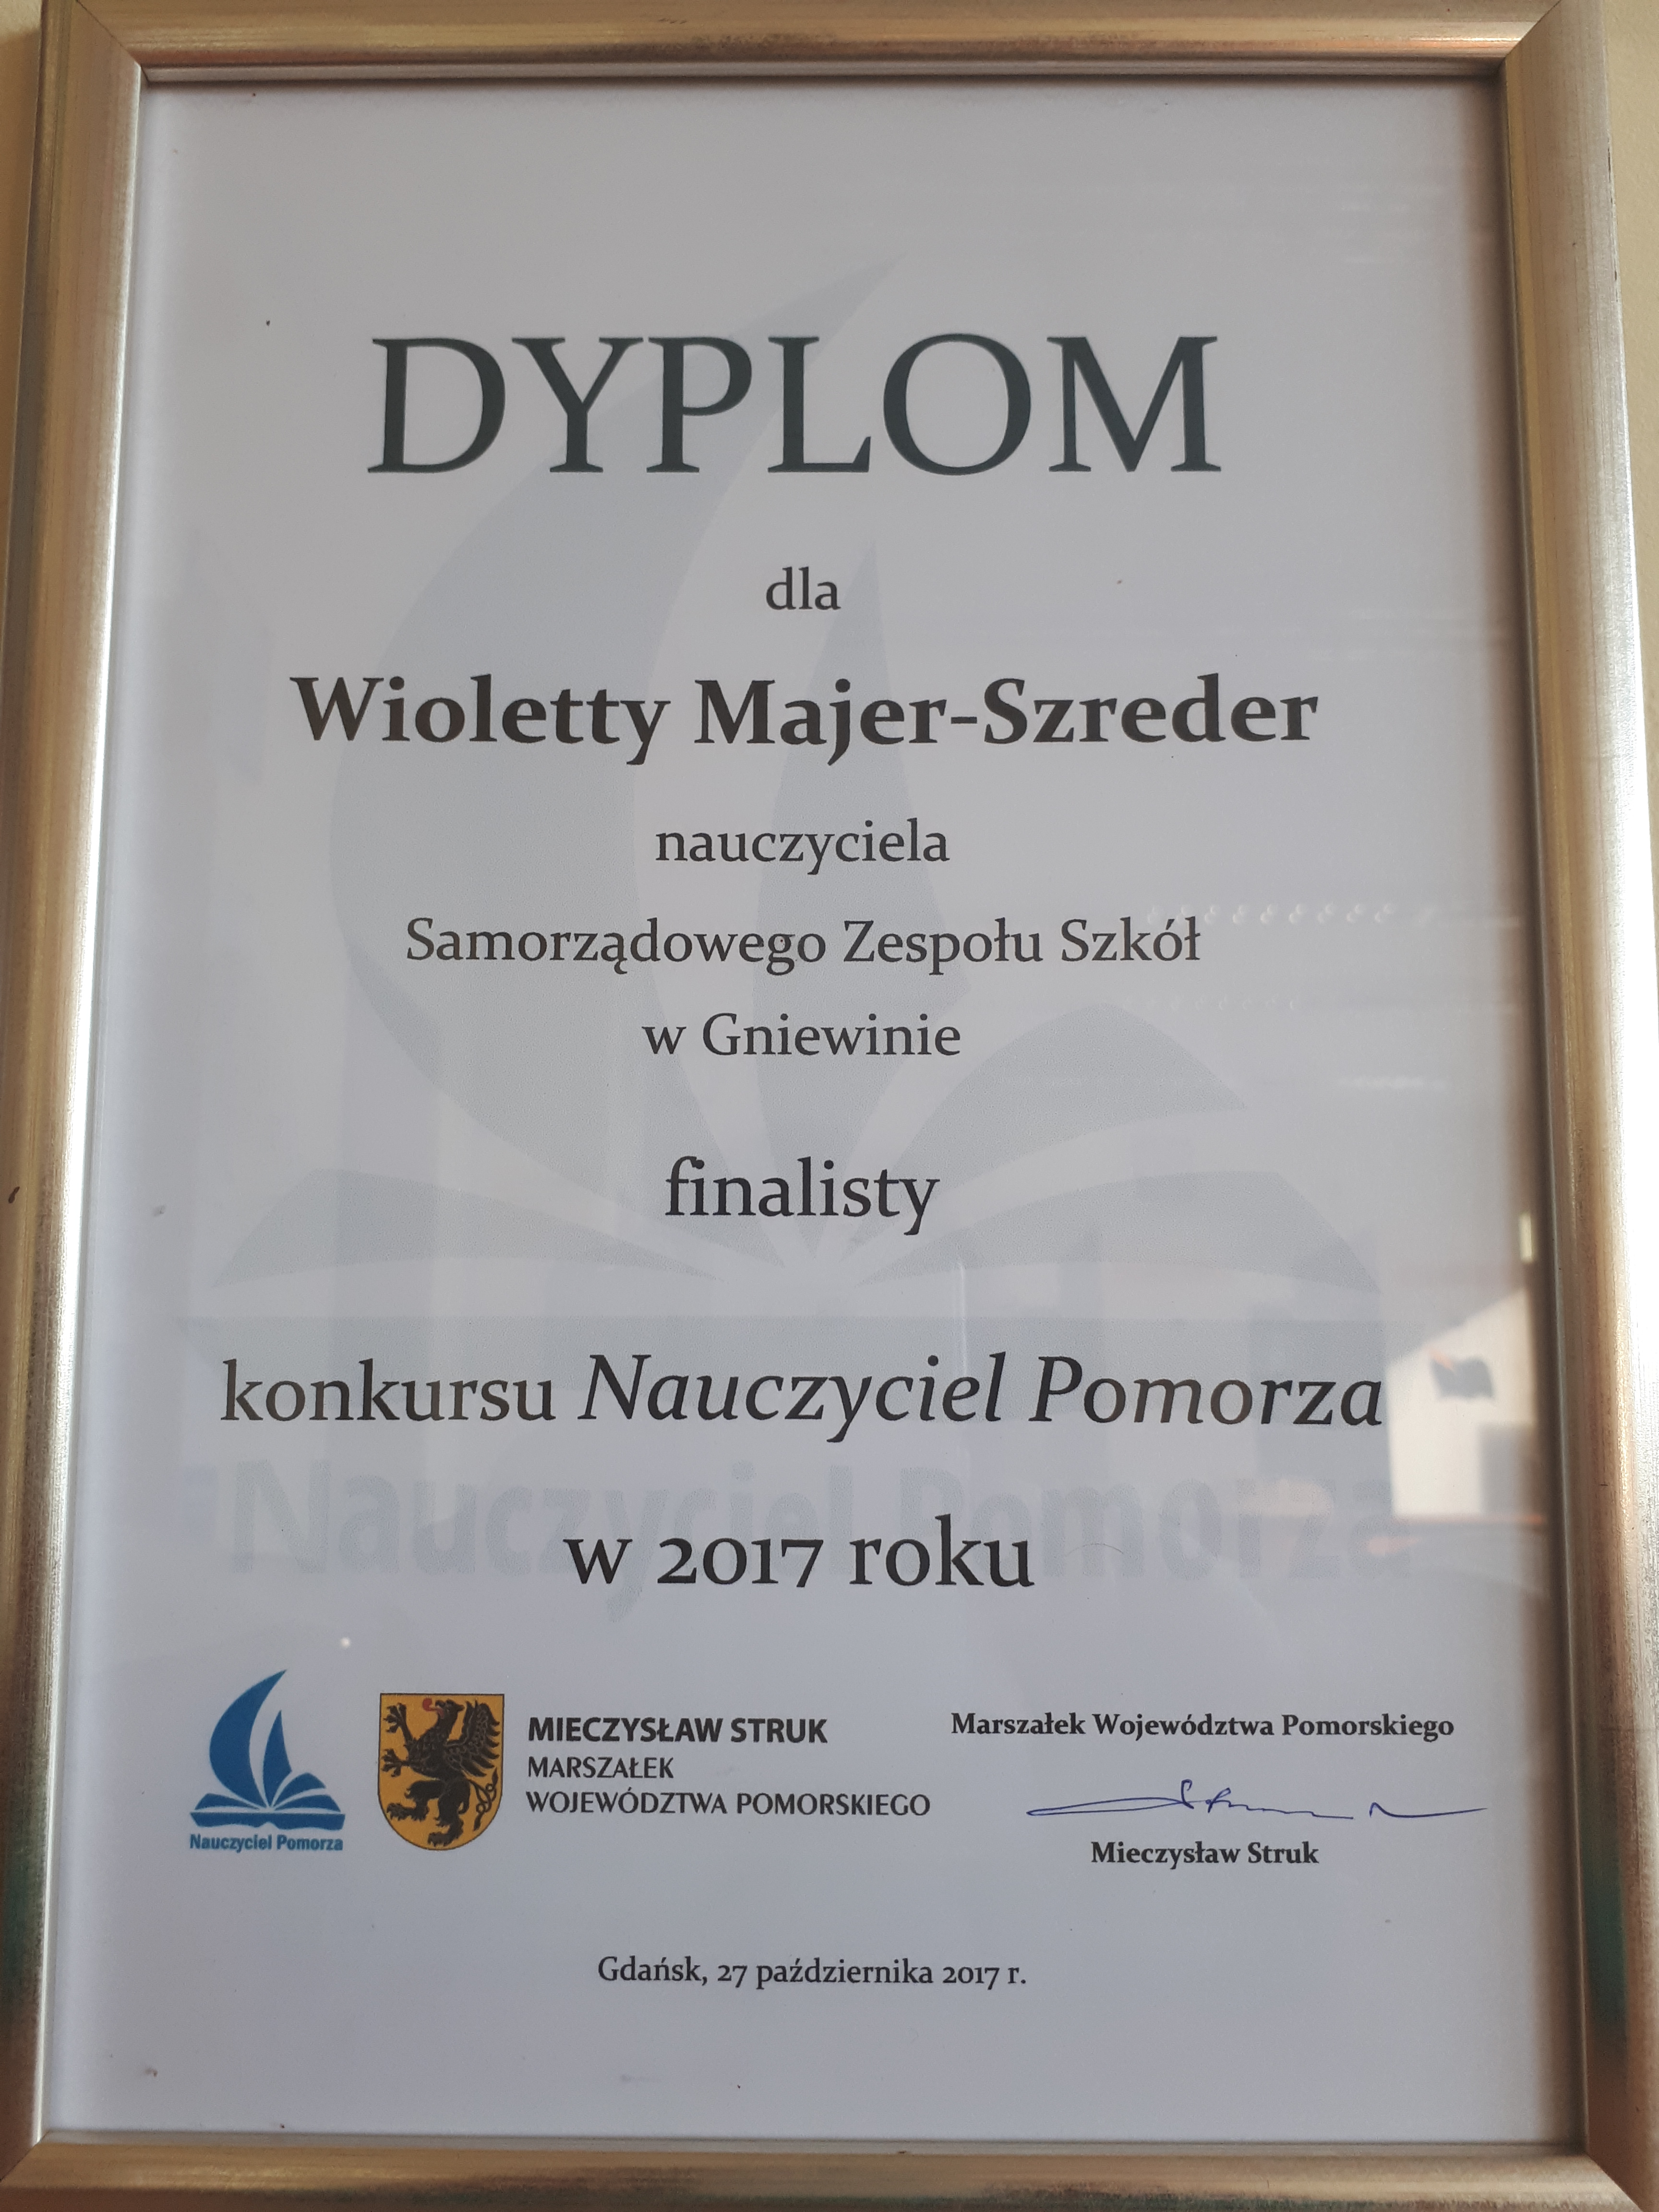 Pani Wioletta Majer-Szreder finalistką tytułu Nauczyciel Pomorza 2017